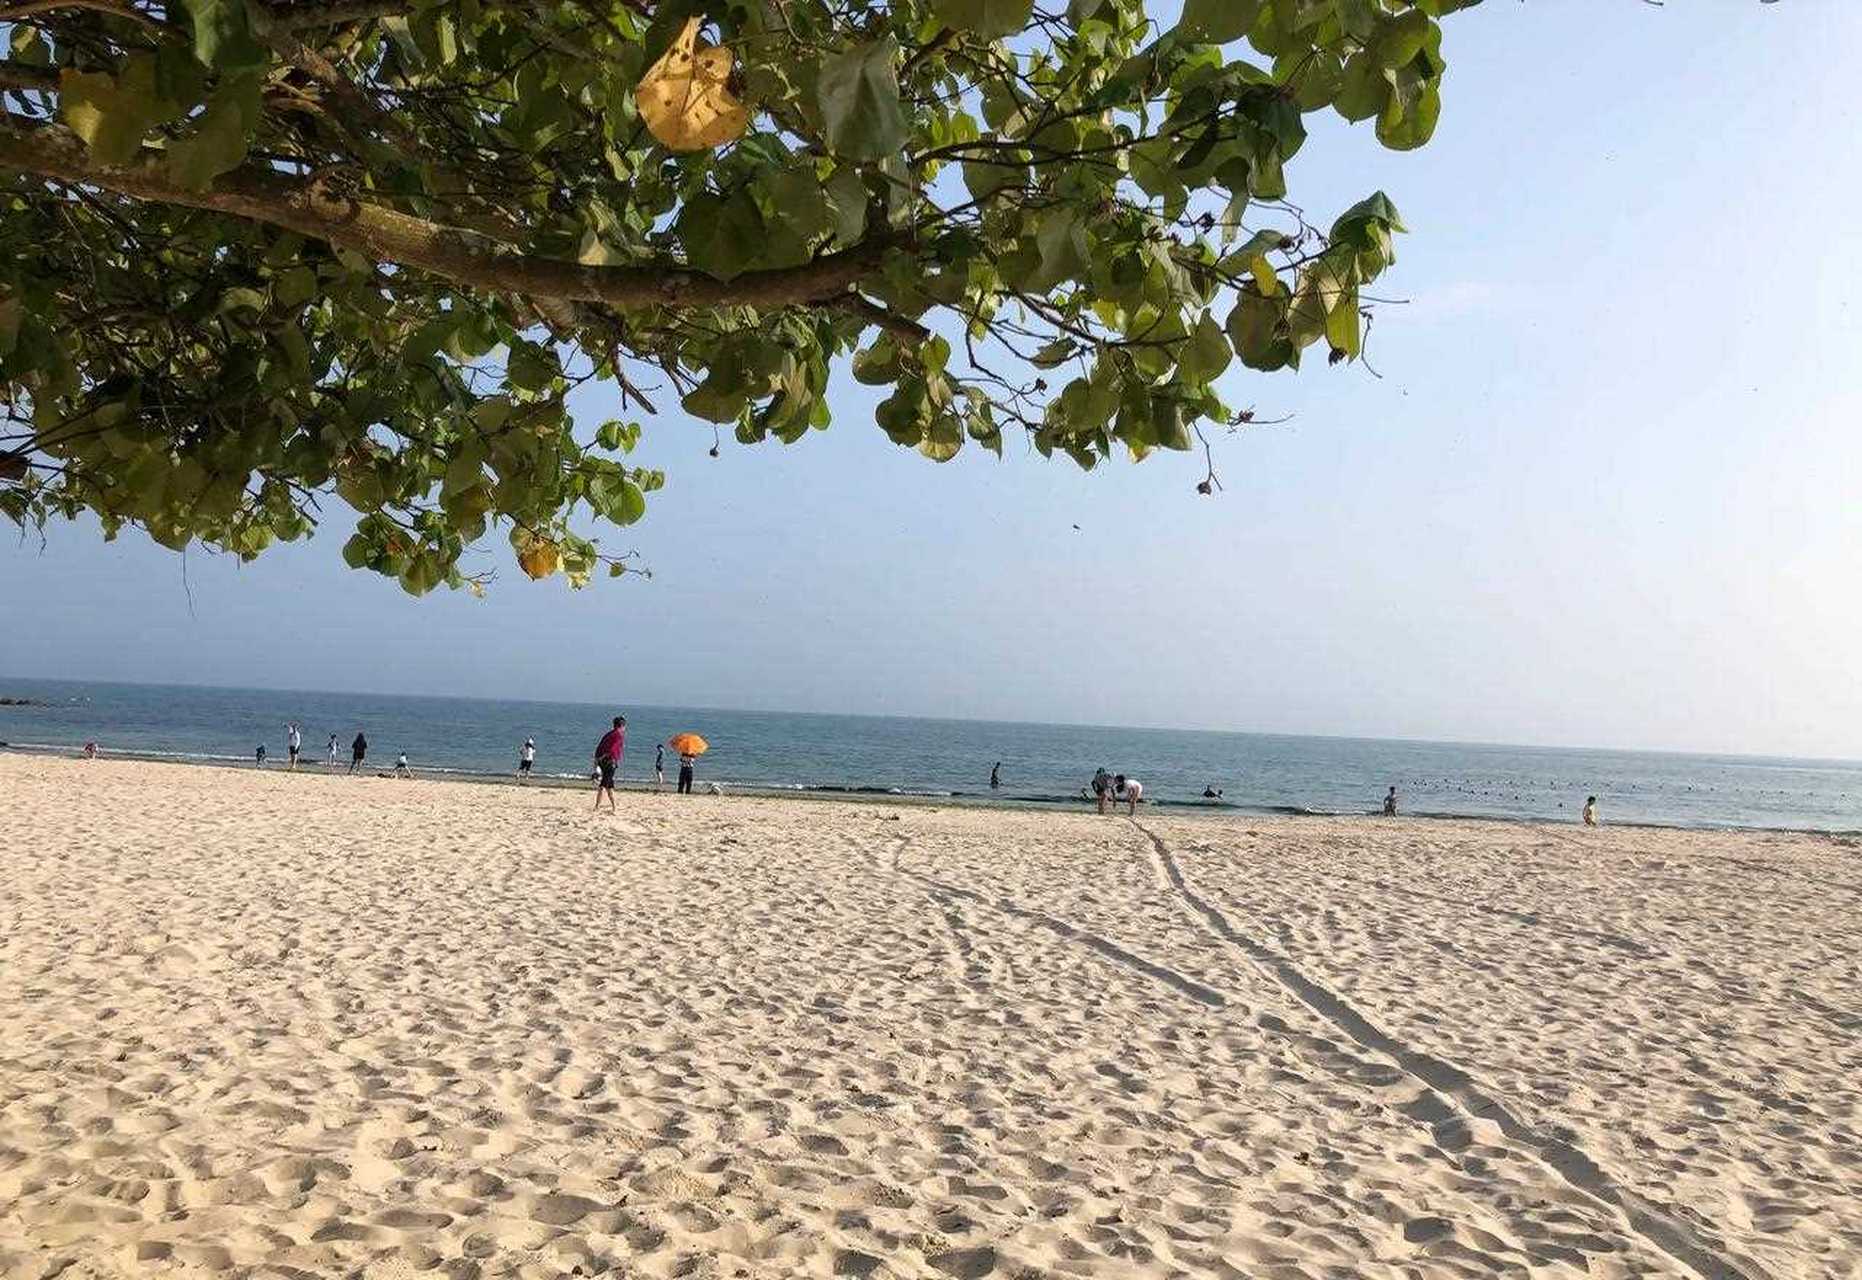 再次来到了惠州的碧海湾,这里比以前更漂亮啦 天蓝水清沙滩细软又白